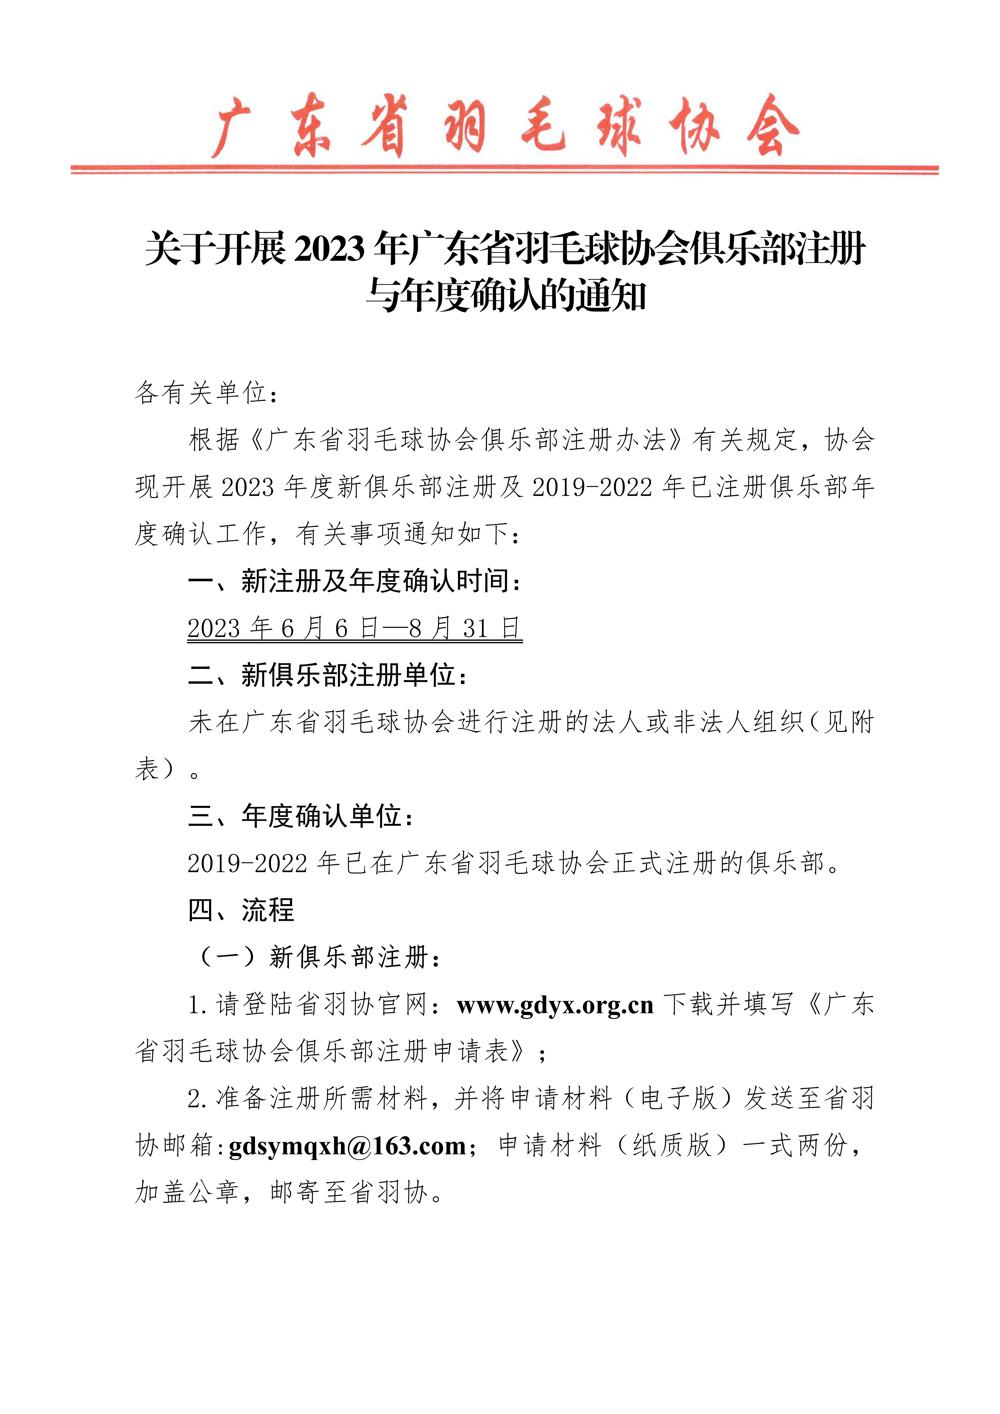 广东省羽毛球协会关于开展2022年度俱乐部注册工作的通知-合并版_01